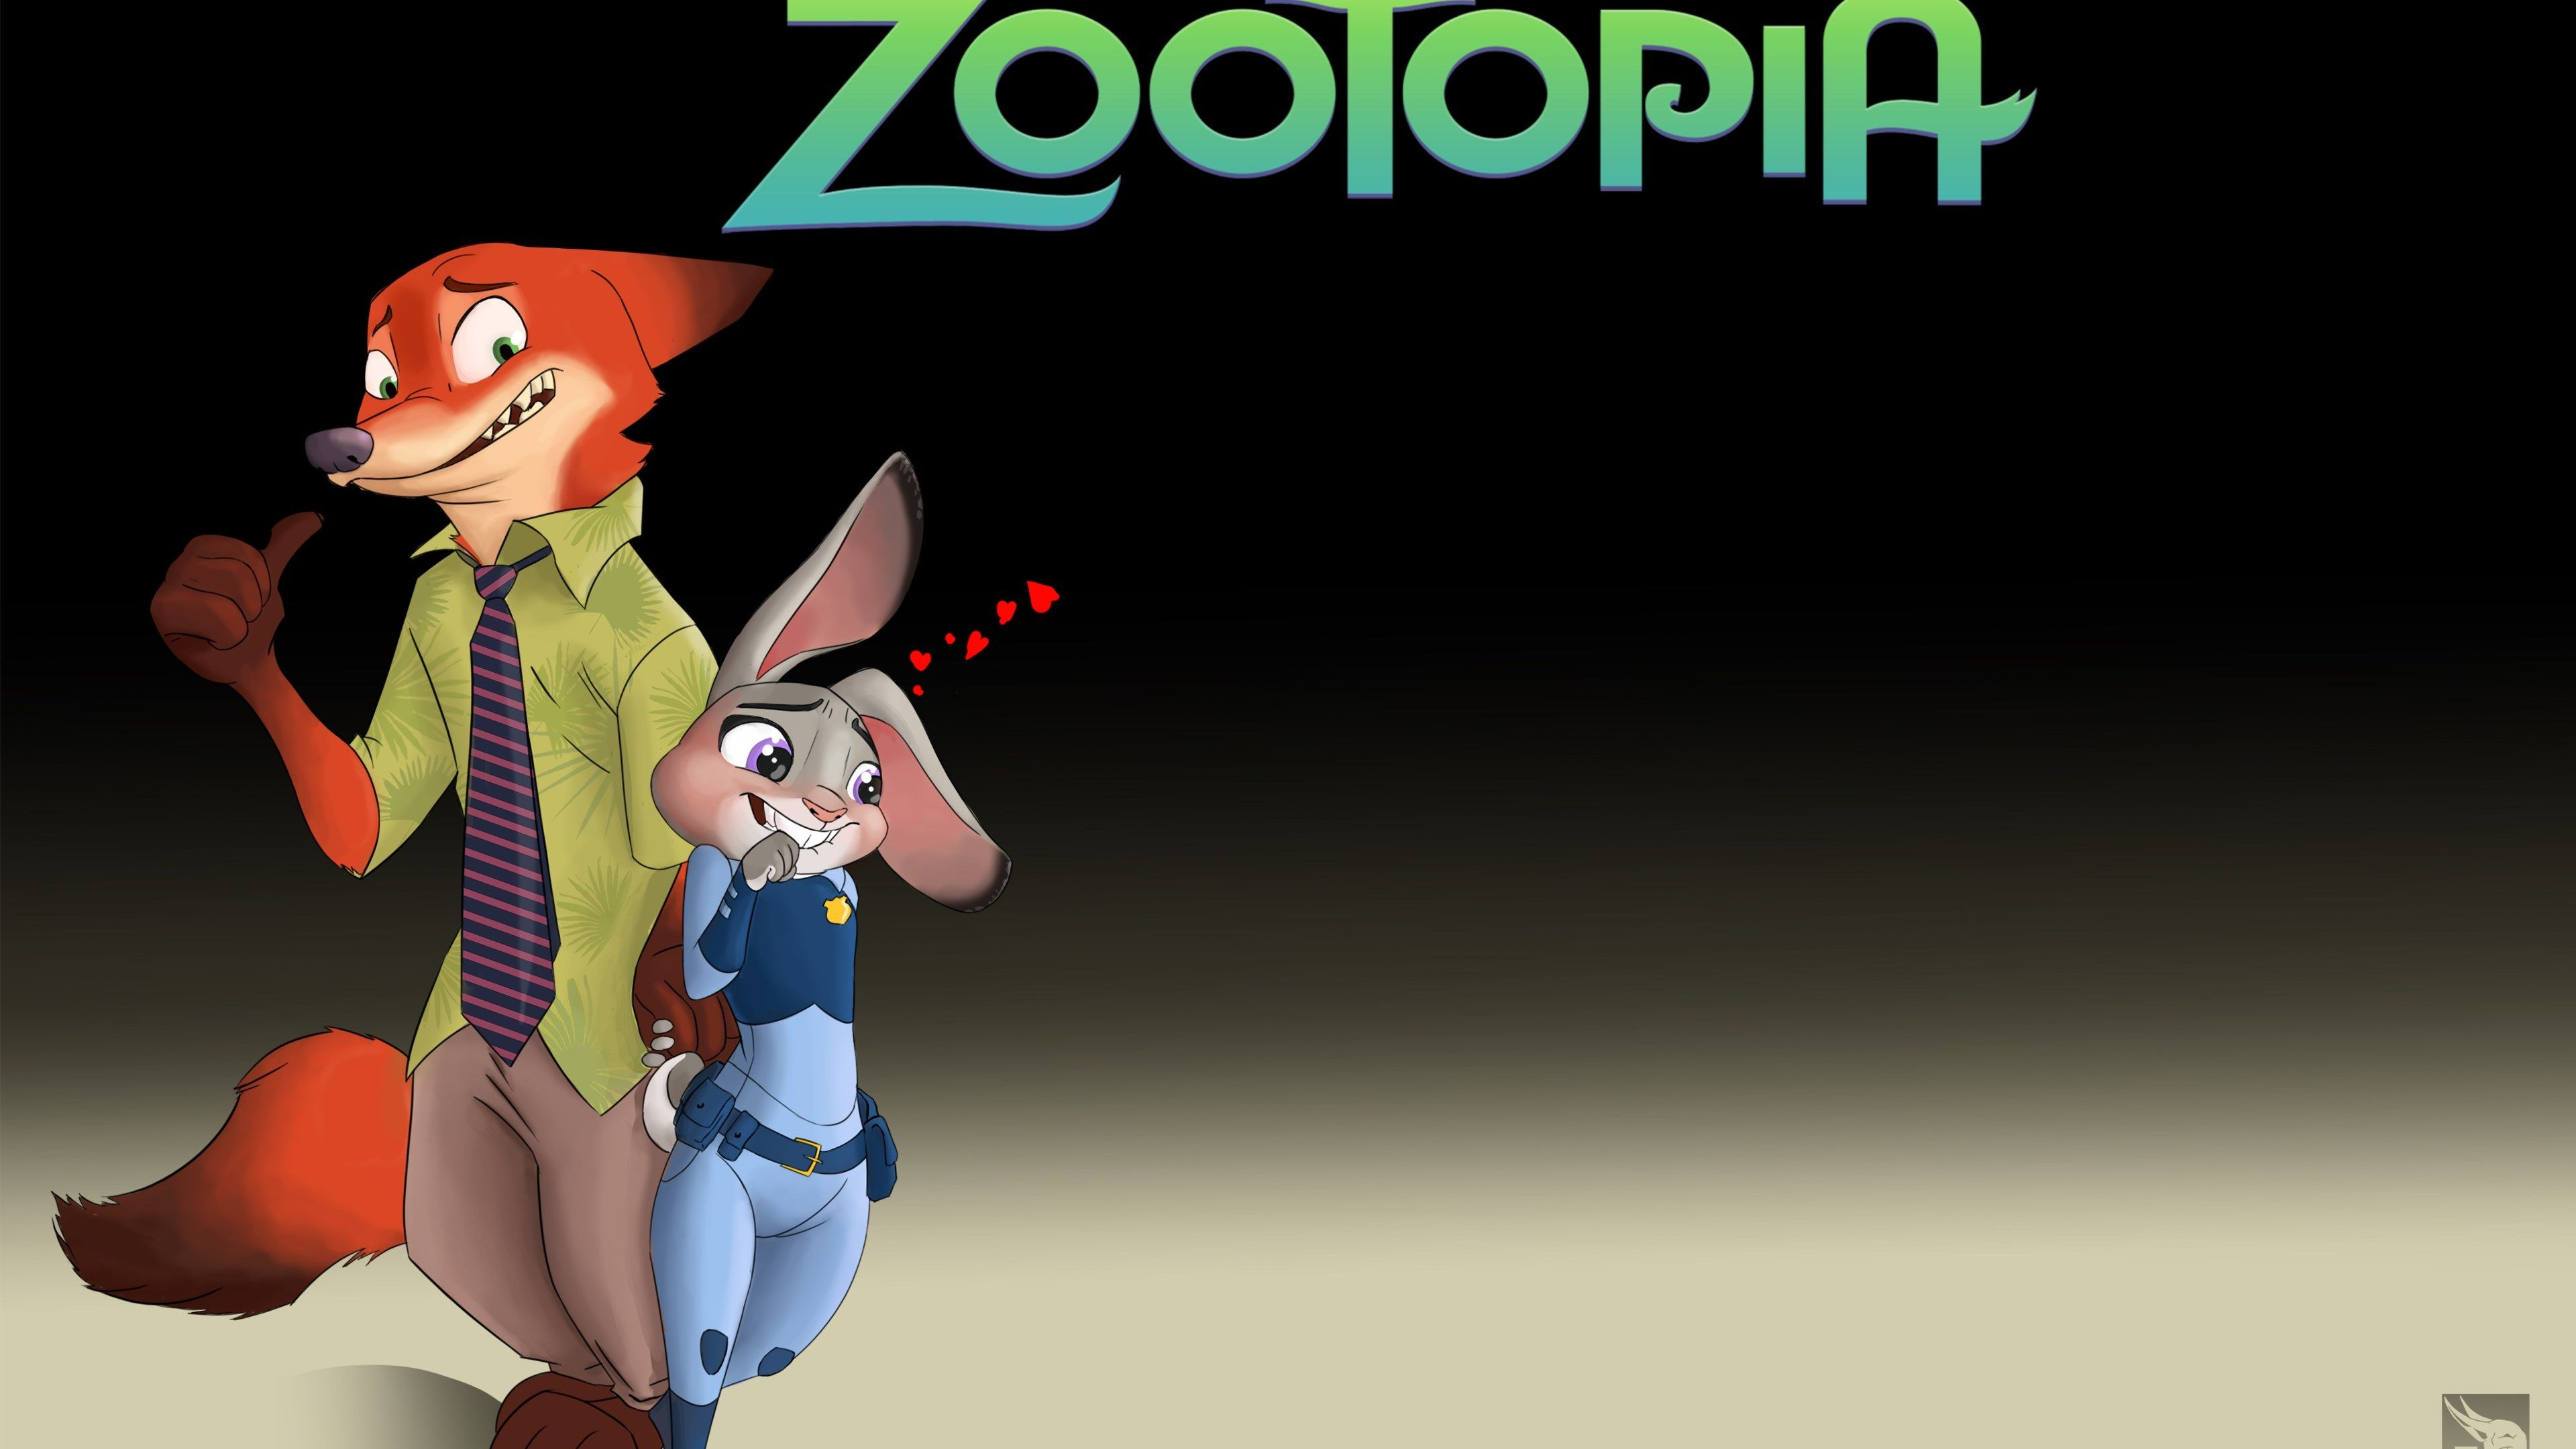 3840x2160 zootopia 4k cool wallpaper for desktop | Zootopia, Zootopia movie, Zootopia hd